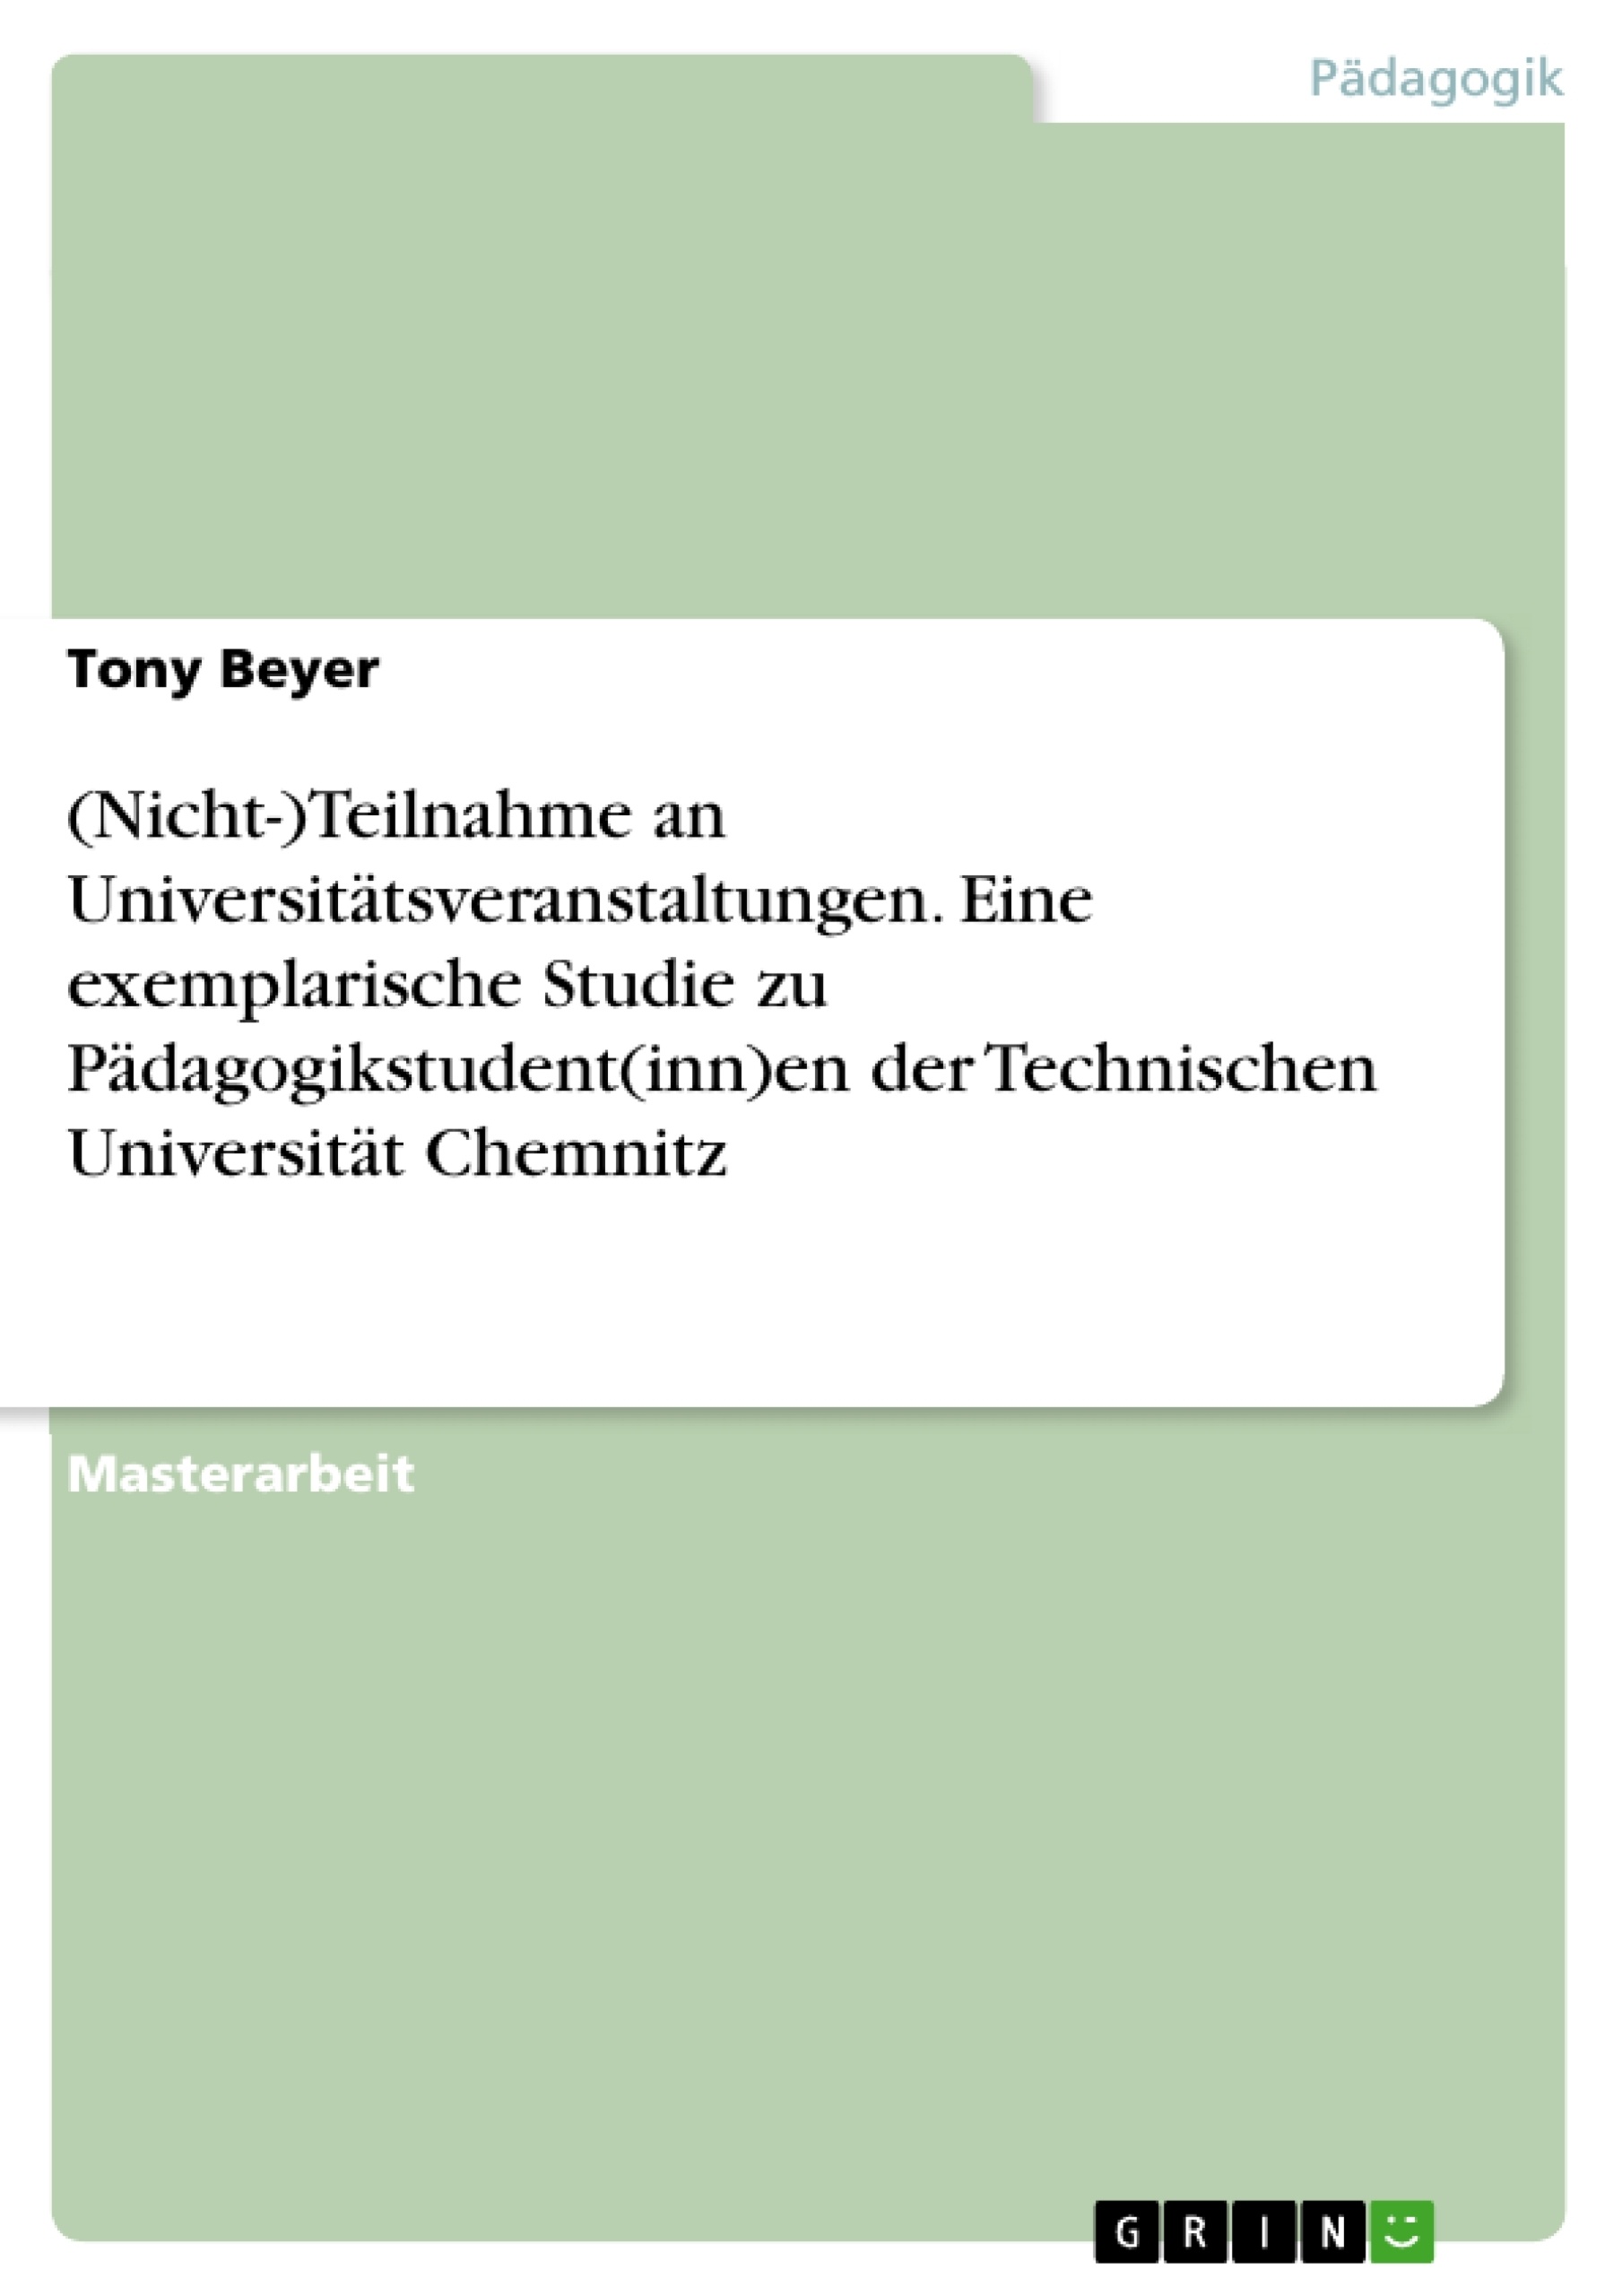 Título: (Nicht-)Teilnahme an Universitätsveranstaltungen. Eine exemplarische Studie zu Pädagogikstudent(inn)en der Technischen Universität Chemnitz